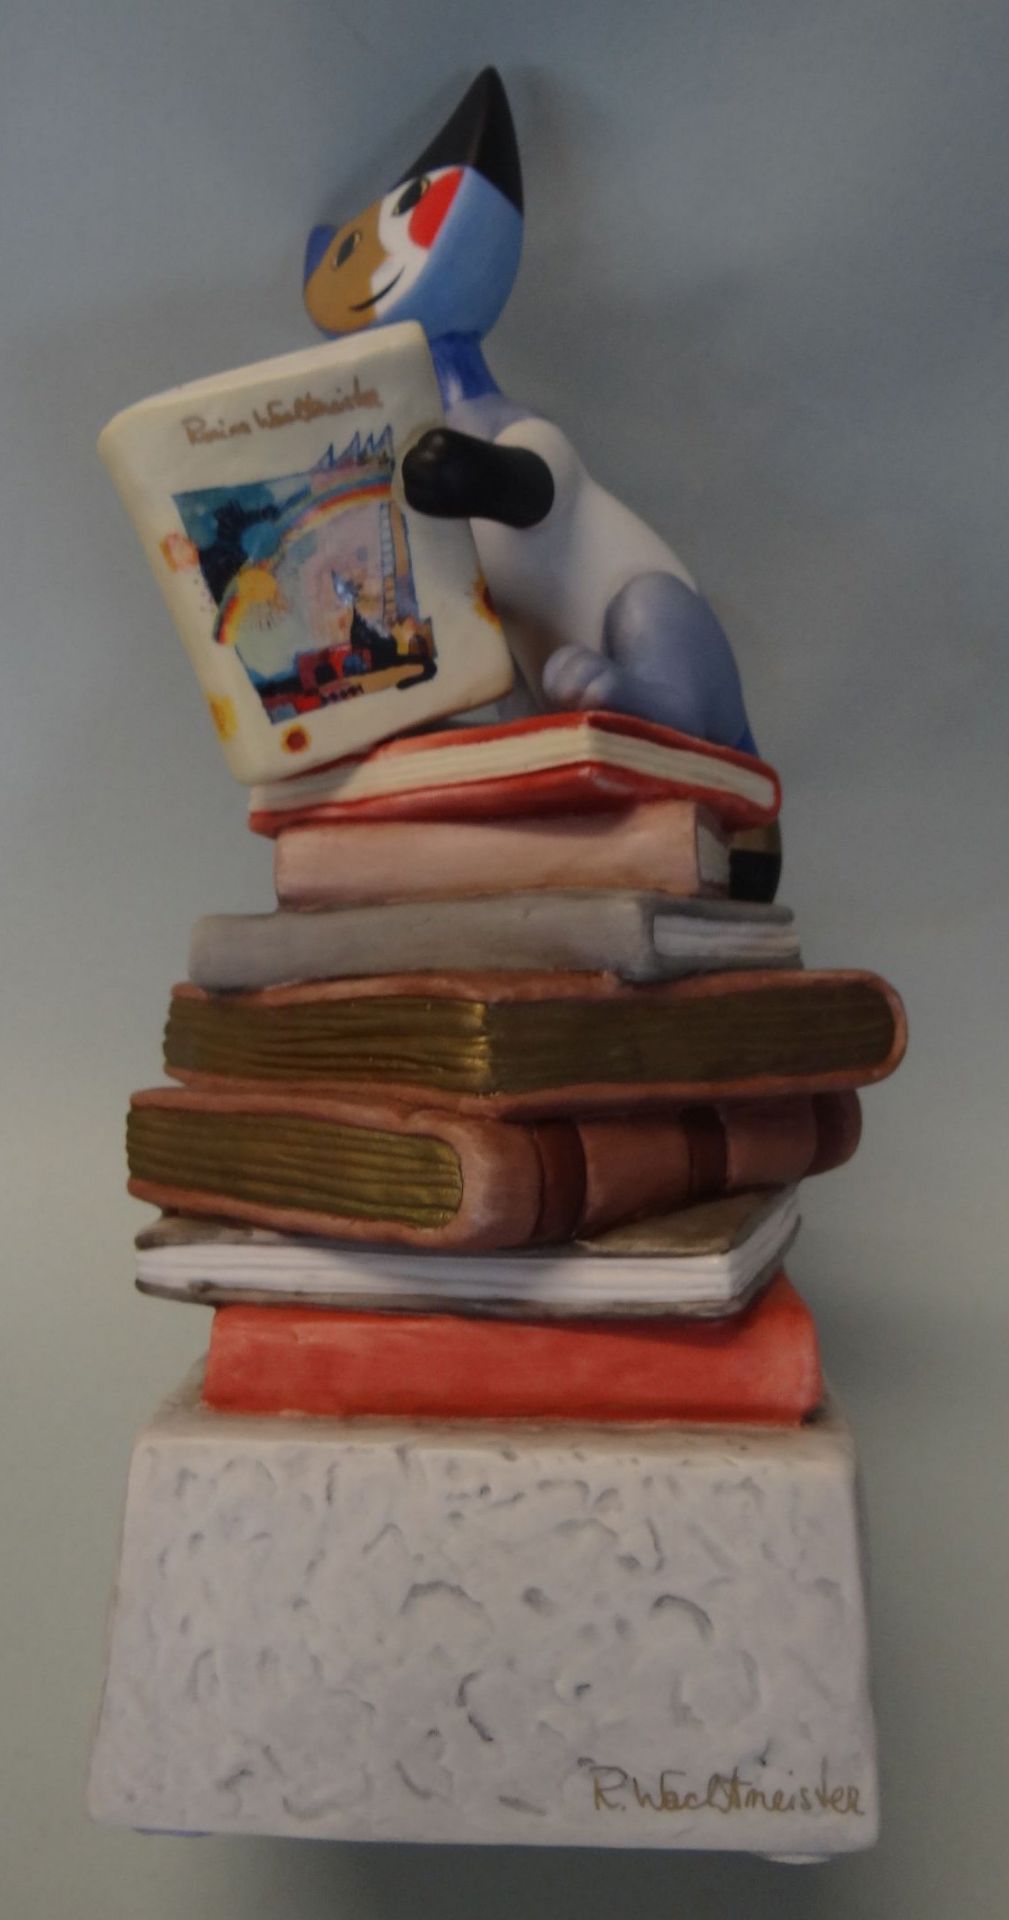 gr. Goebel-Katze auf Bücher, Spieluhr von Goebel nach R.Wachtmeister, H-23 c - Bild 5 aus 7